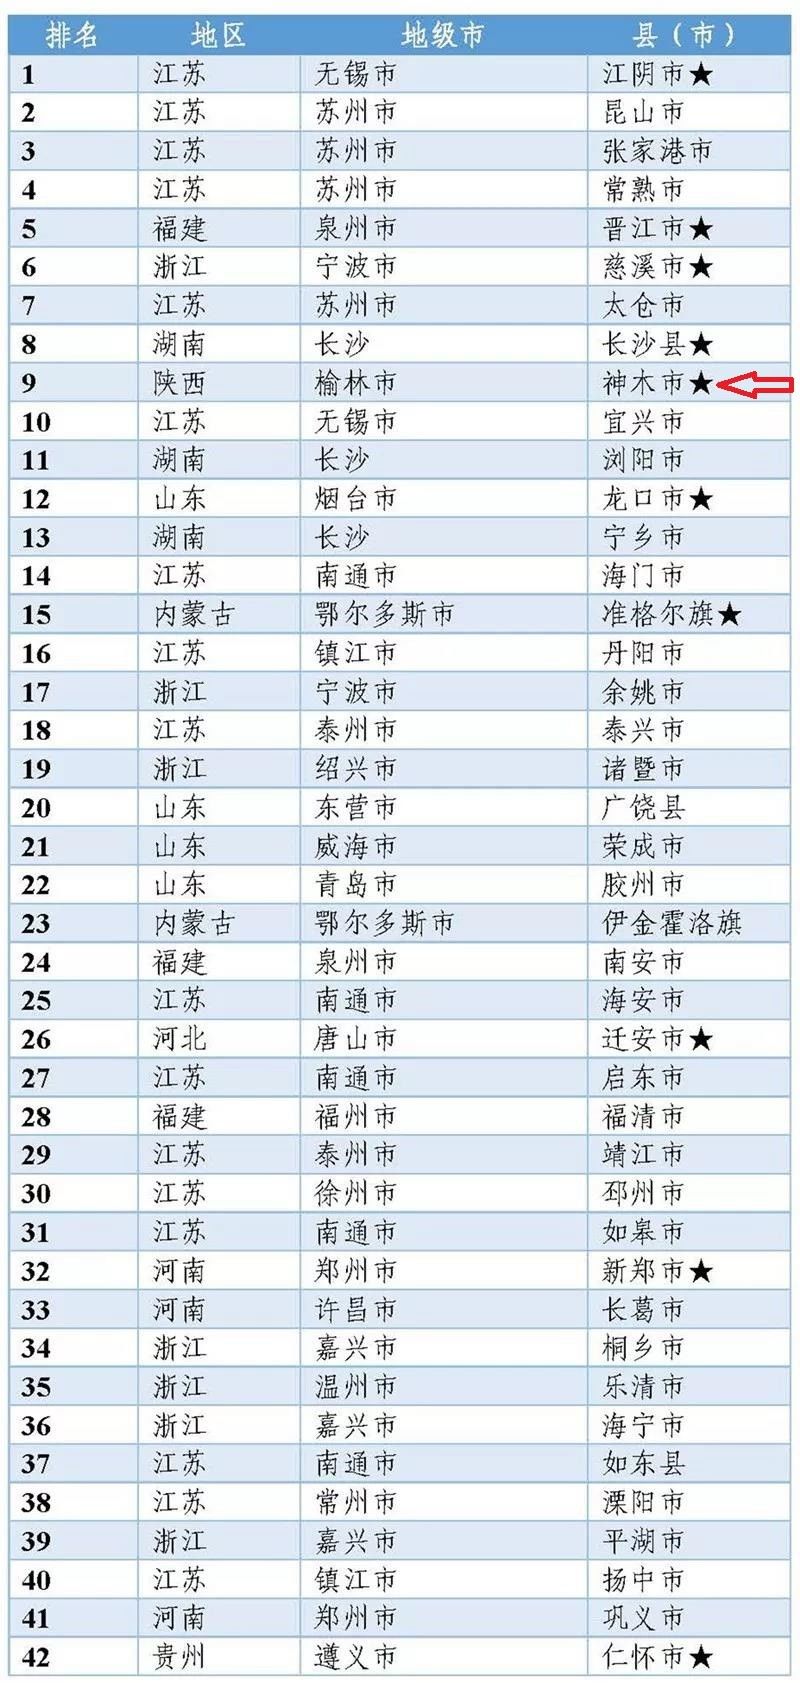 2019年化肥行业排行榜_2019年中国化肥企业100强排行榜发布会,新启力生态